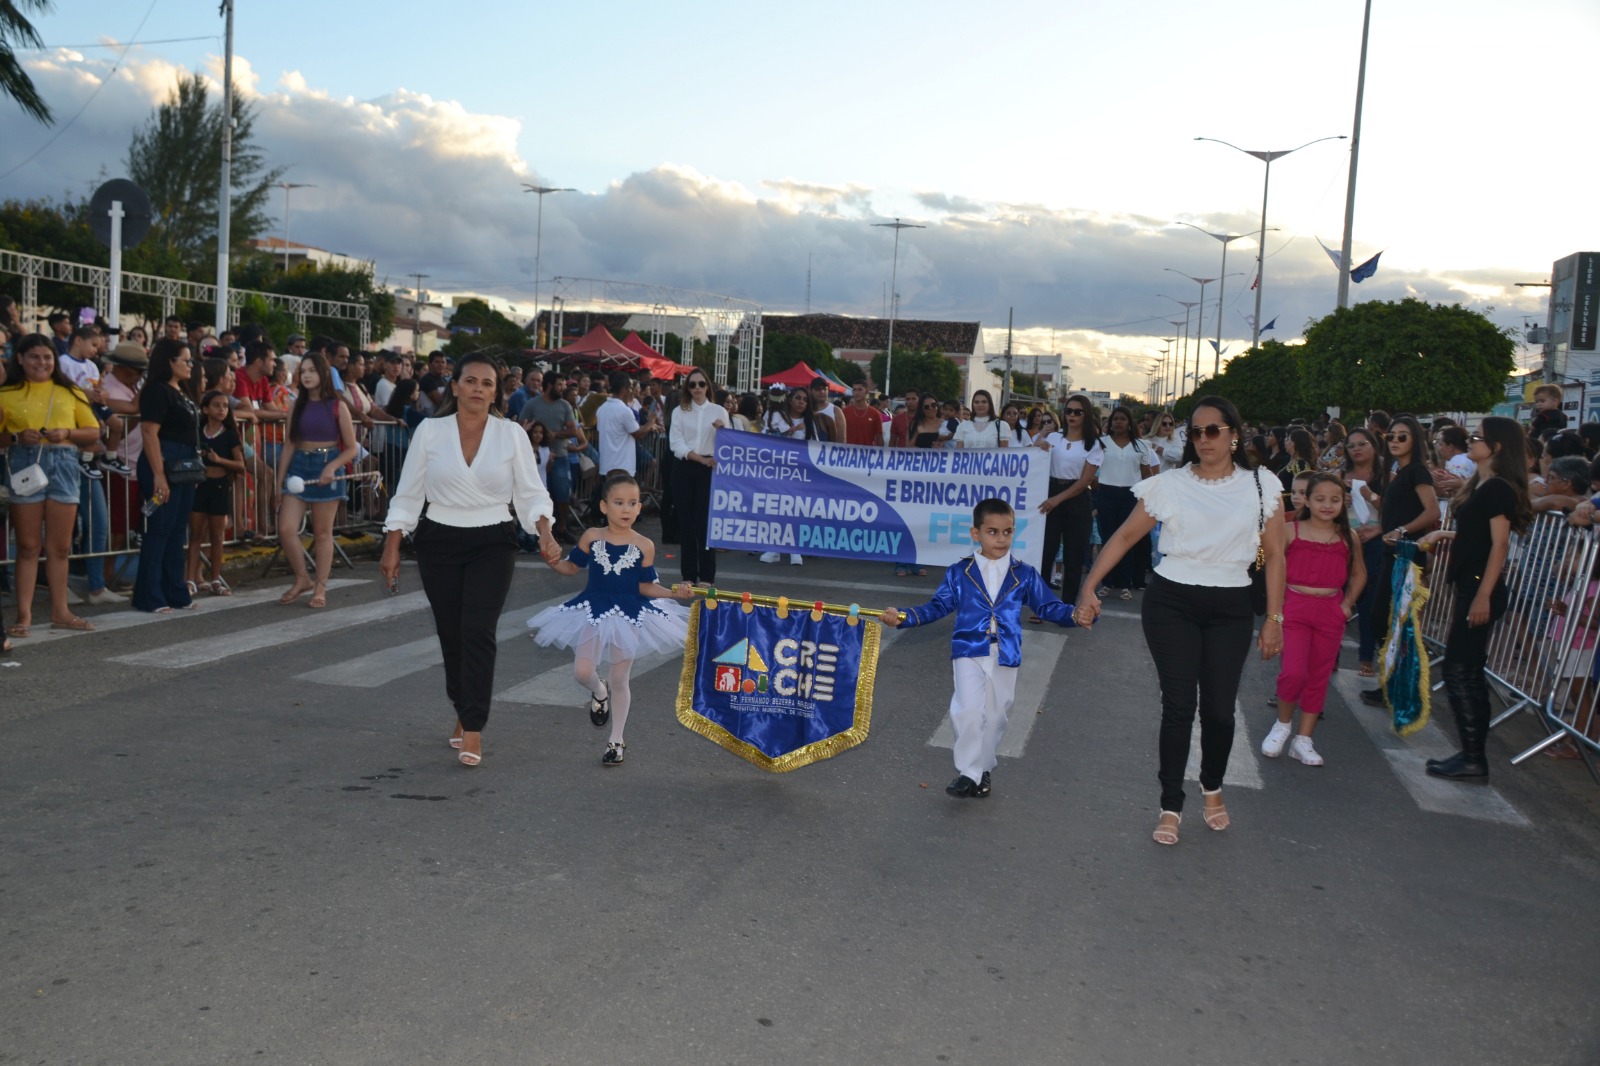 Desfiles-Civicos-em-Monteiro-acontecem-com-grande-presenca-de-publico-e-autoridades-8 Desfiles Cívicos em Monteiro acontecem com grande presença de público e autoridades